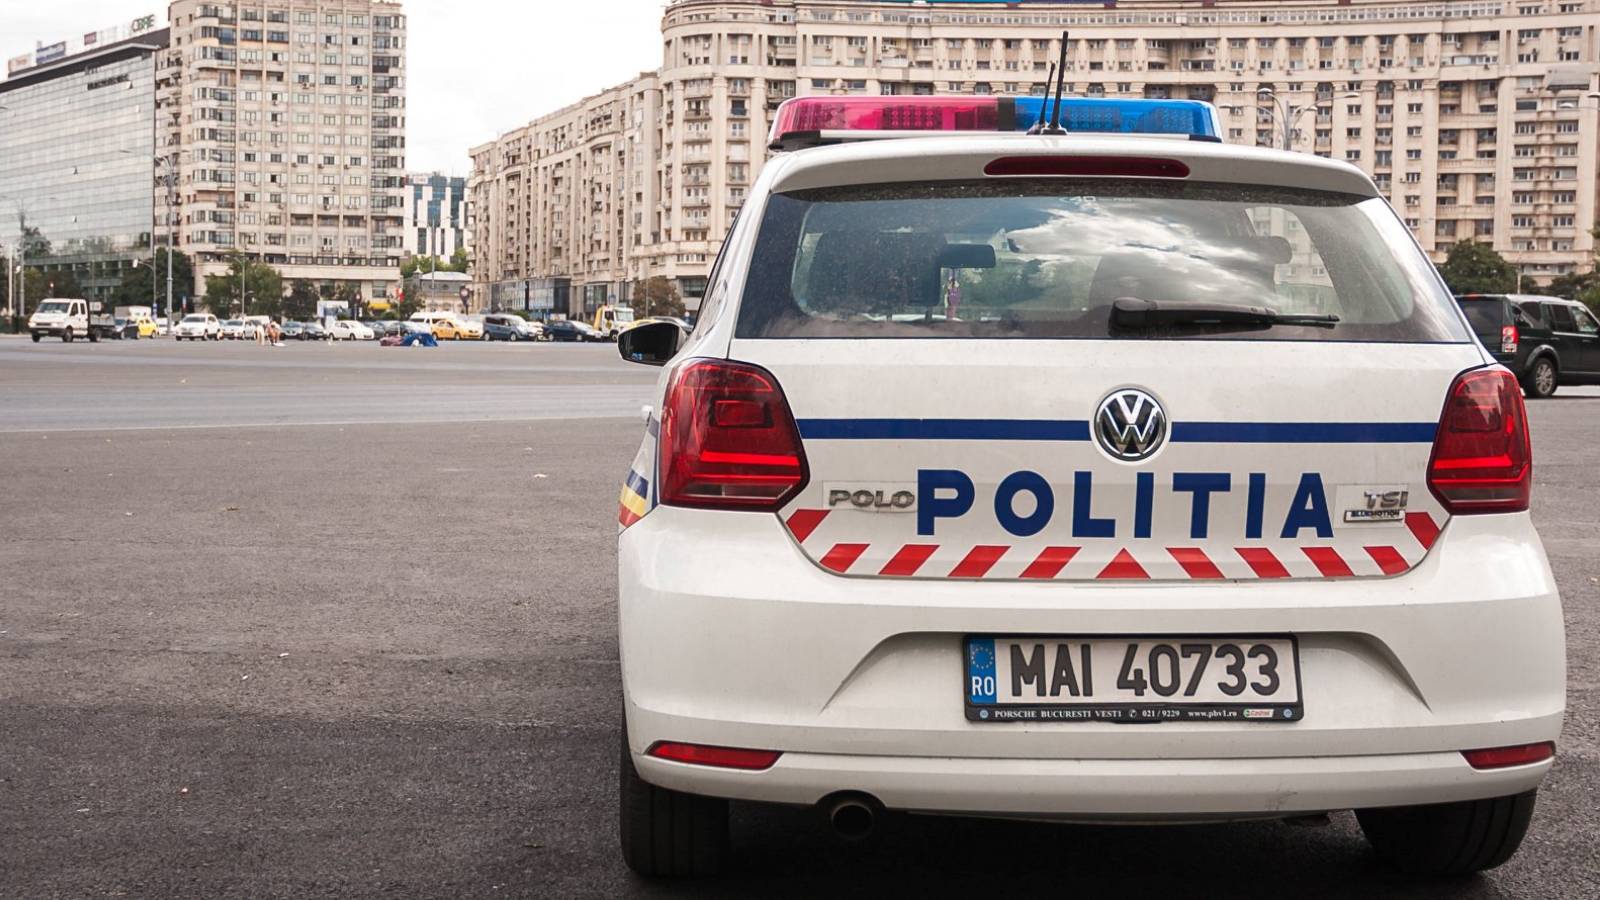 De Roemeense politie maakte kinderen bang